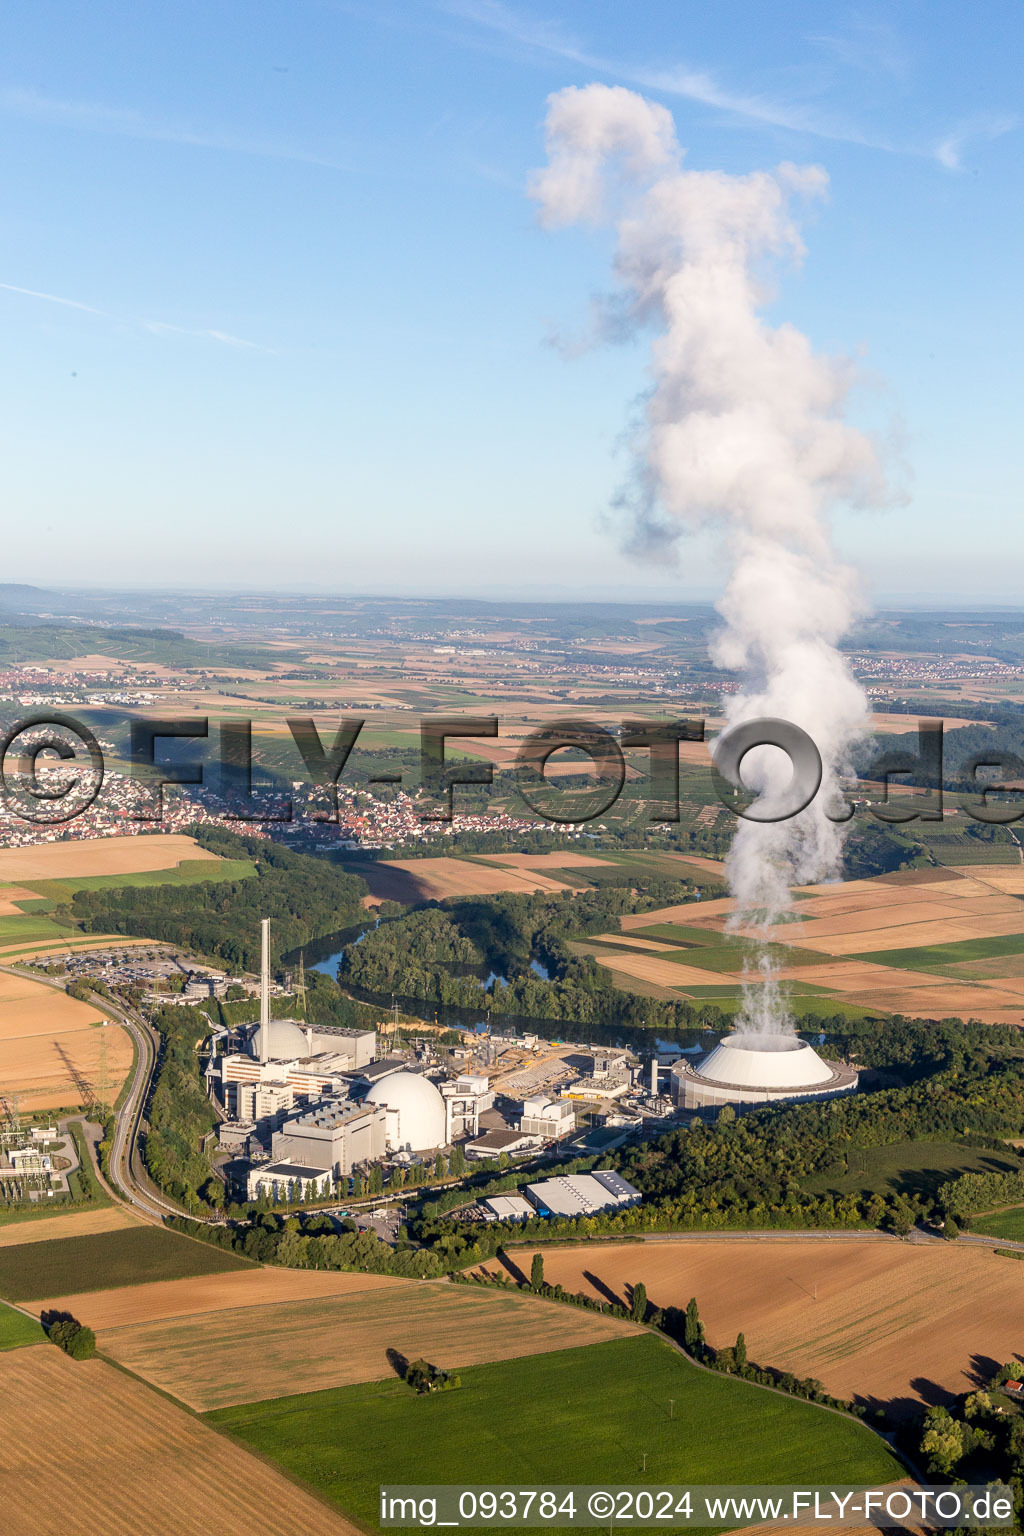 Luftbild von Reaktorblöcke, Kühlturmbauwerke und Anlagen des AKW - KKW Atomkraftwerk - Kernkraftwerk GKN Neckarwestheim in Neckarwestheim im Bundesland Baden-Württemberg, Deutschland